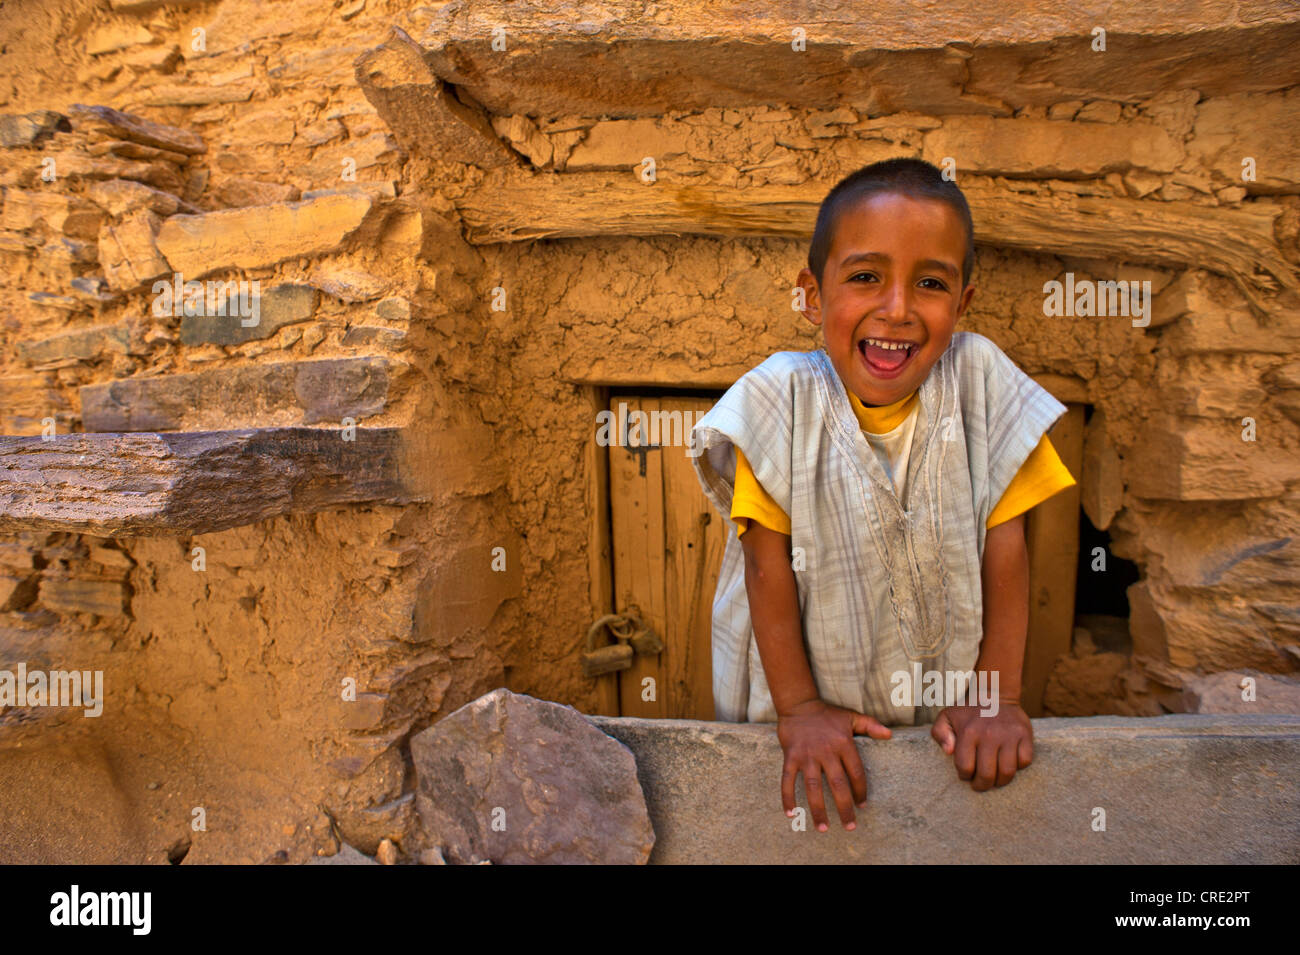 Felice ragazzo davanti all'ingresso di una camera, Tasguent castello di storage, Anti-Atlas, sud del Marocco, Marocco, Africa Foto Stock